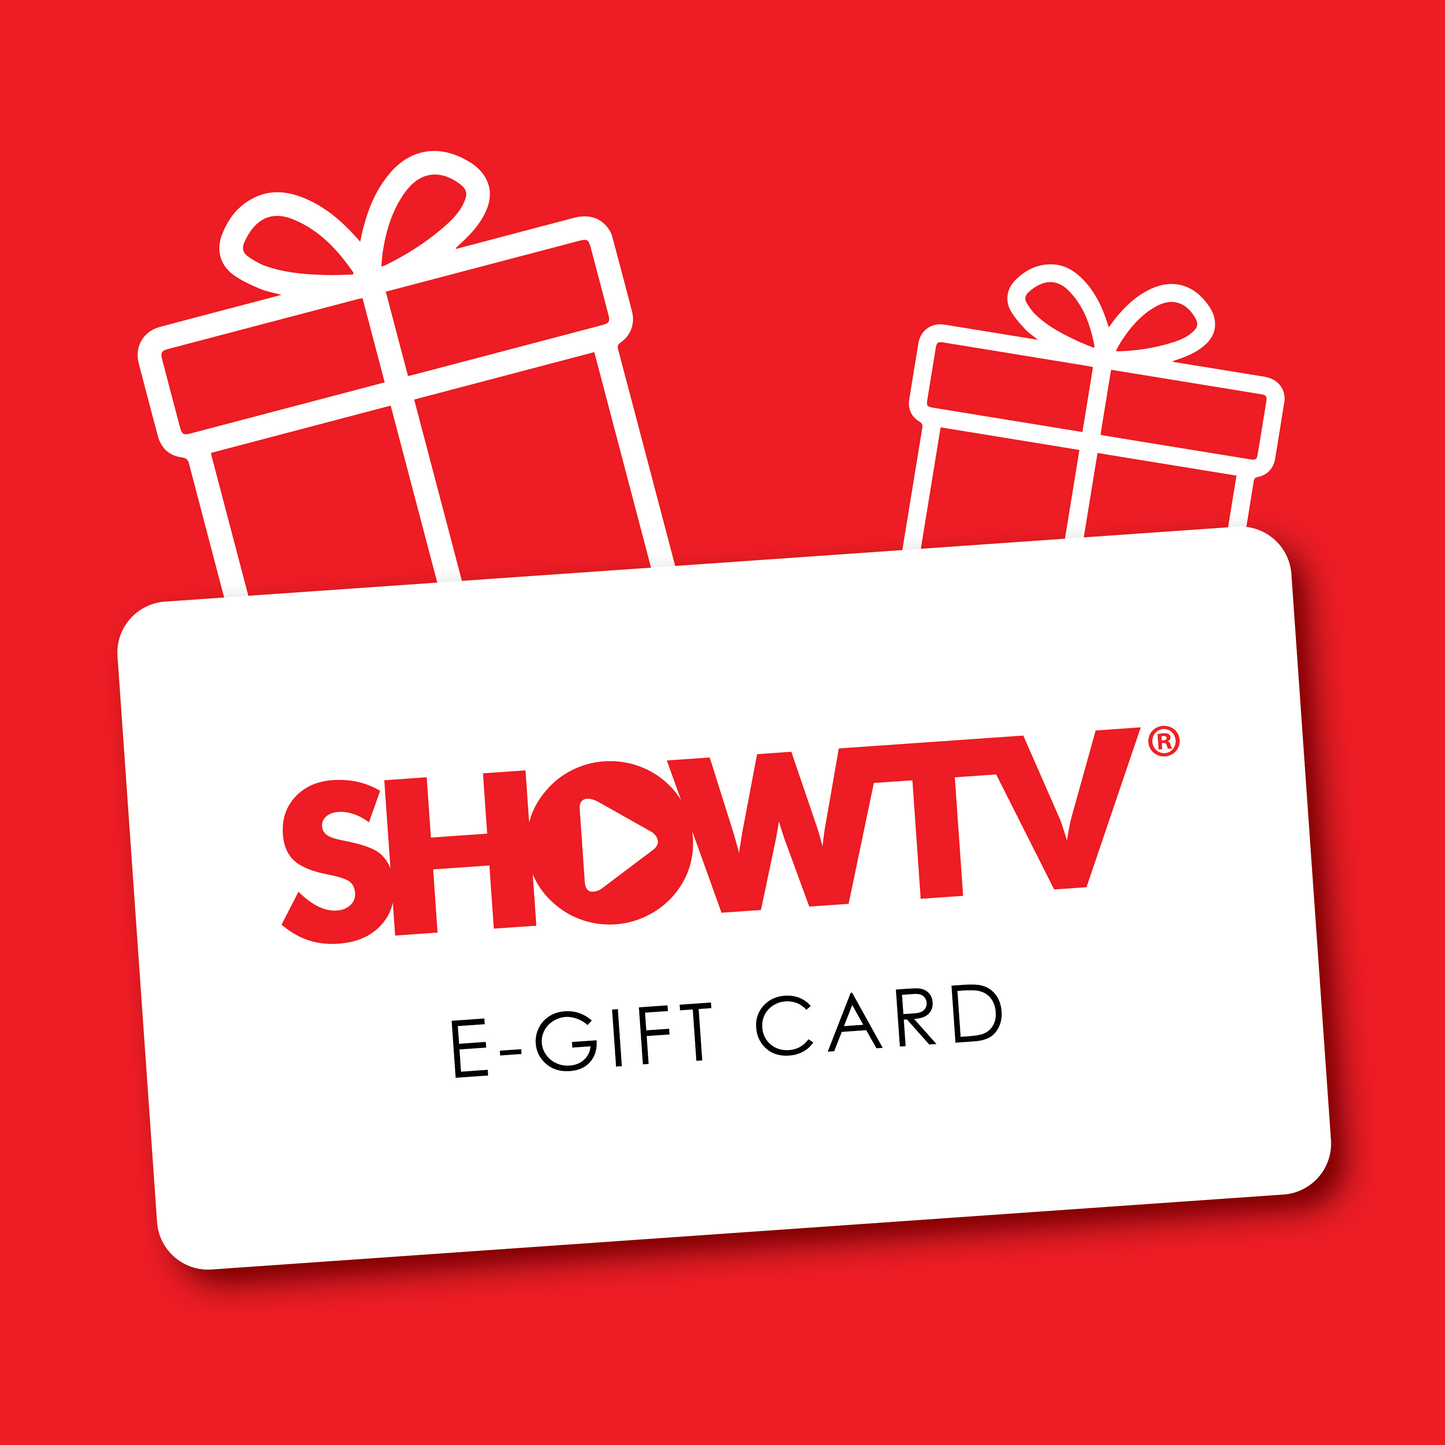 Show TV E-Gift Card